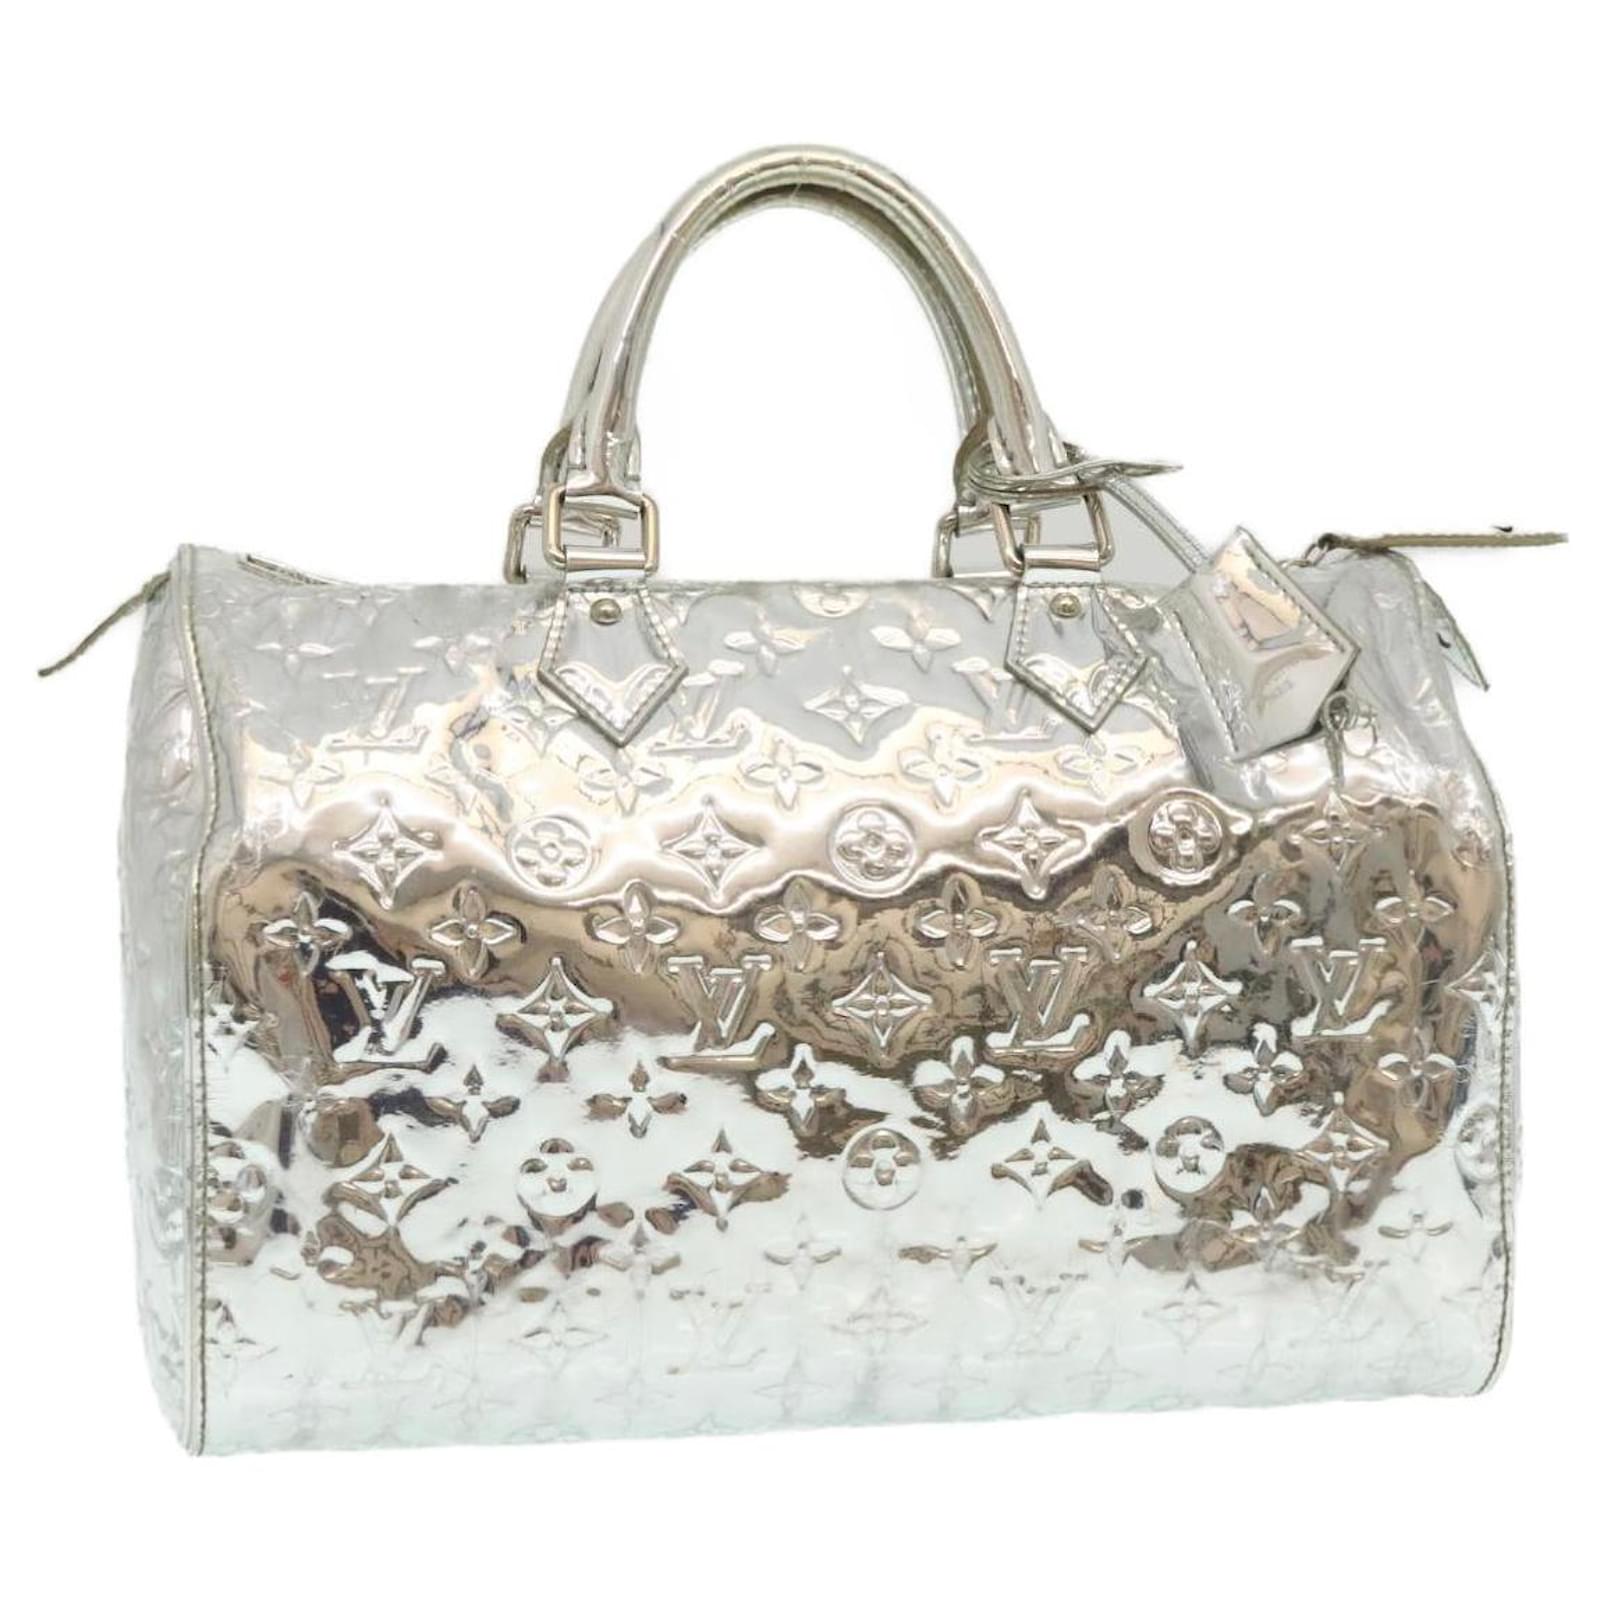 Louis Vuitton Speedy 30 Silver Monogram Miroir Handbag Purse at